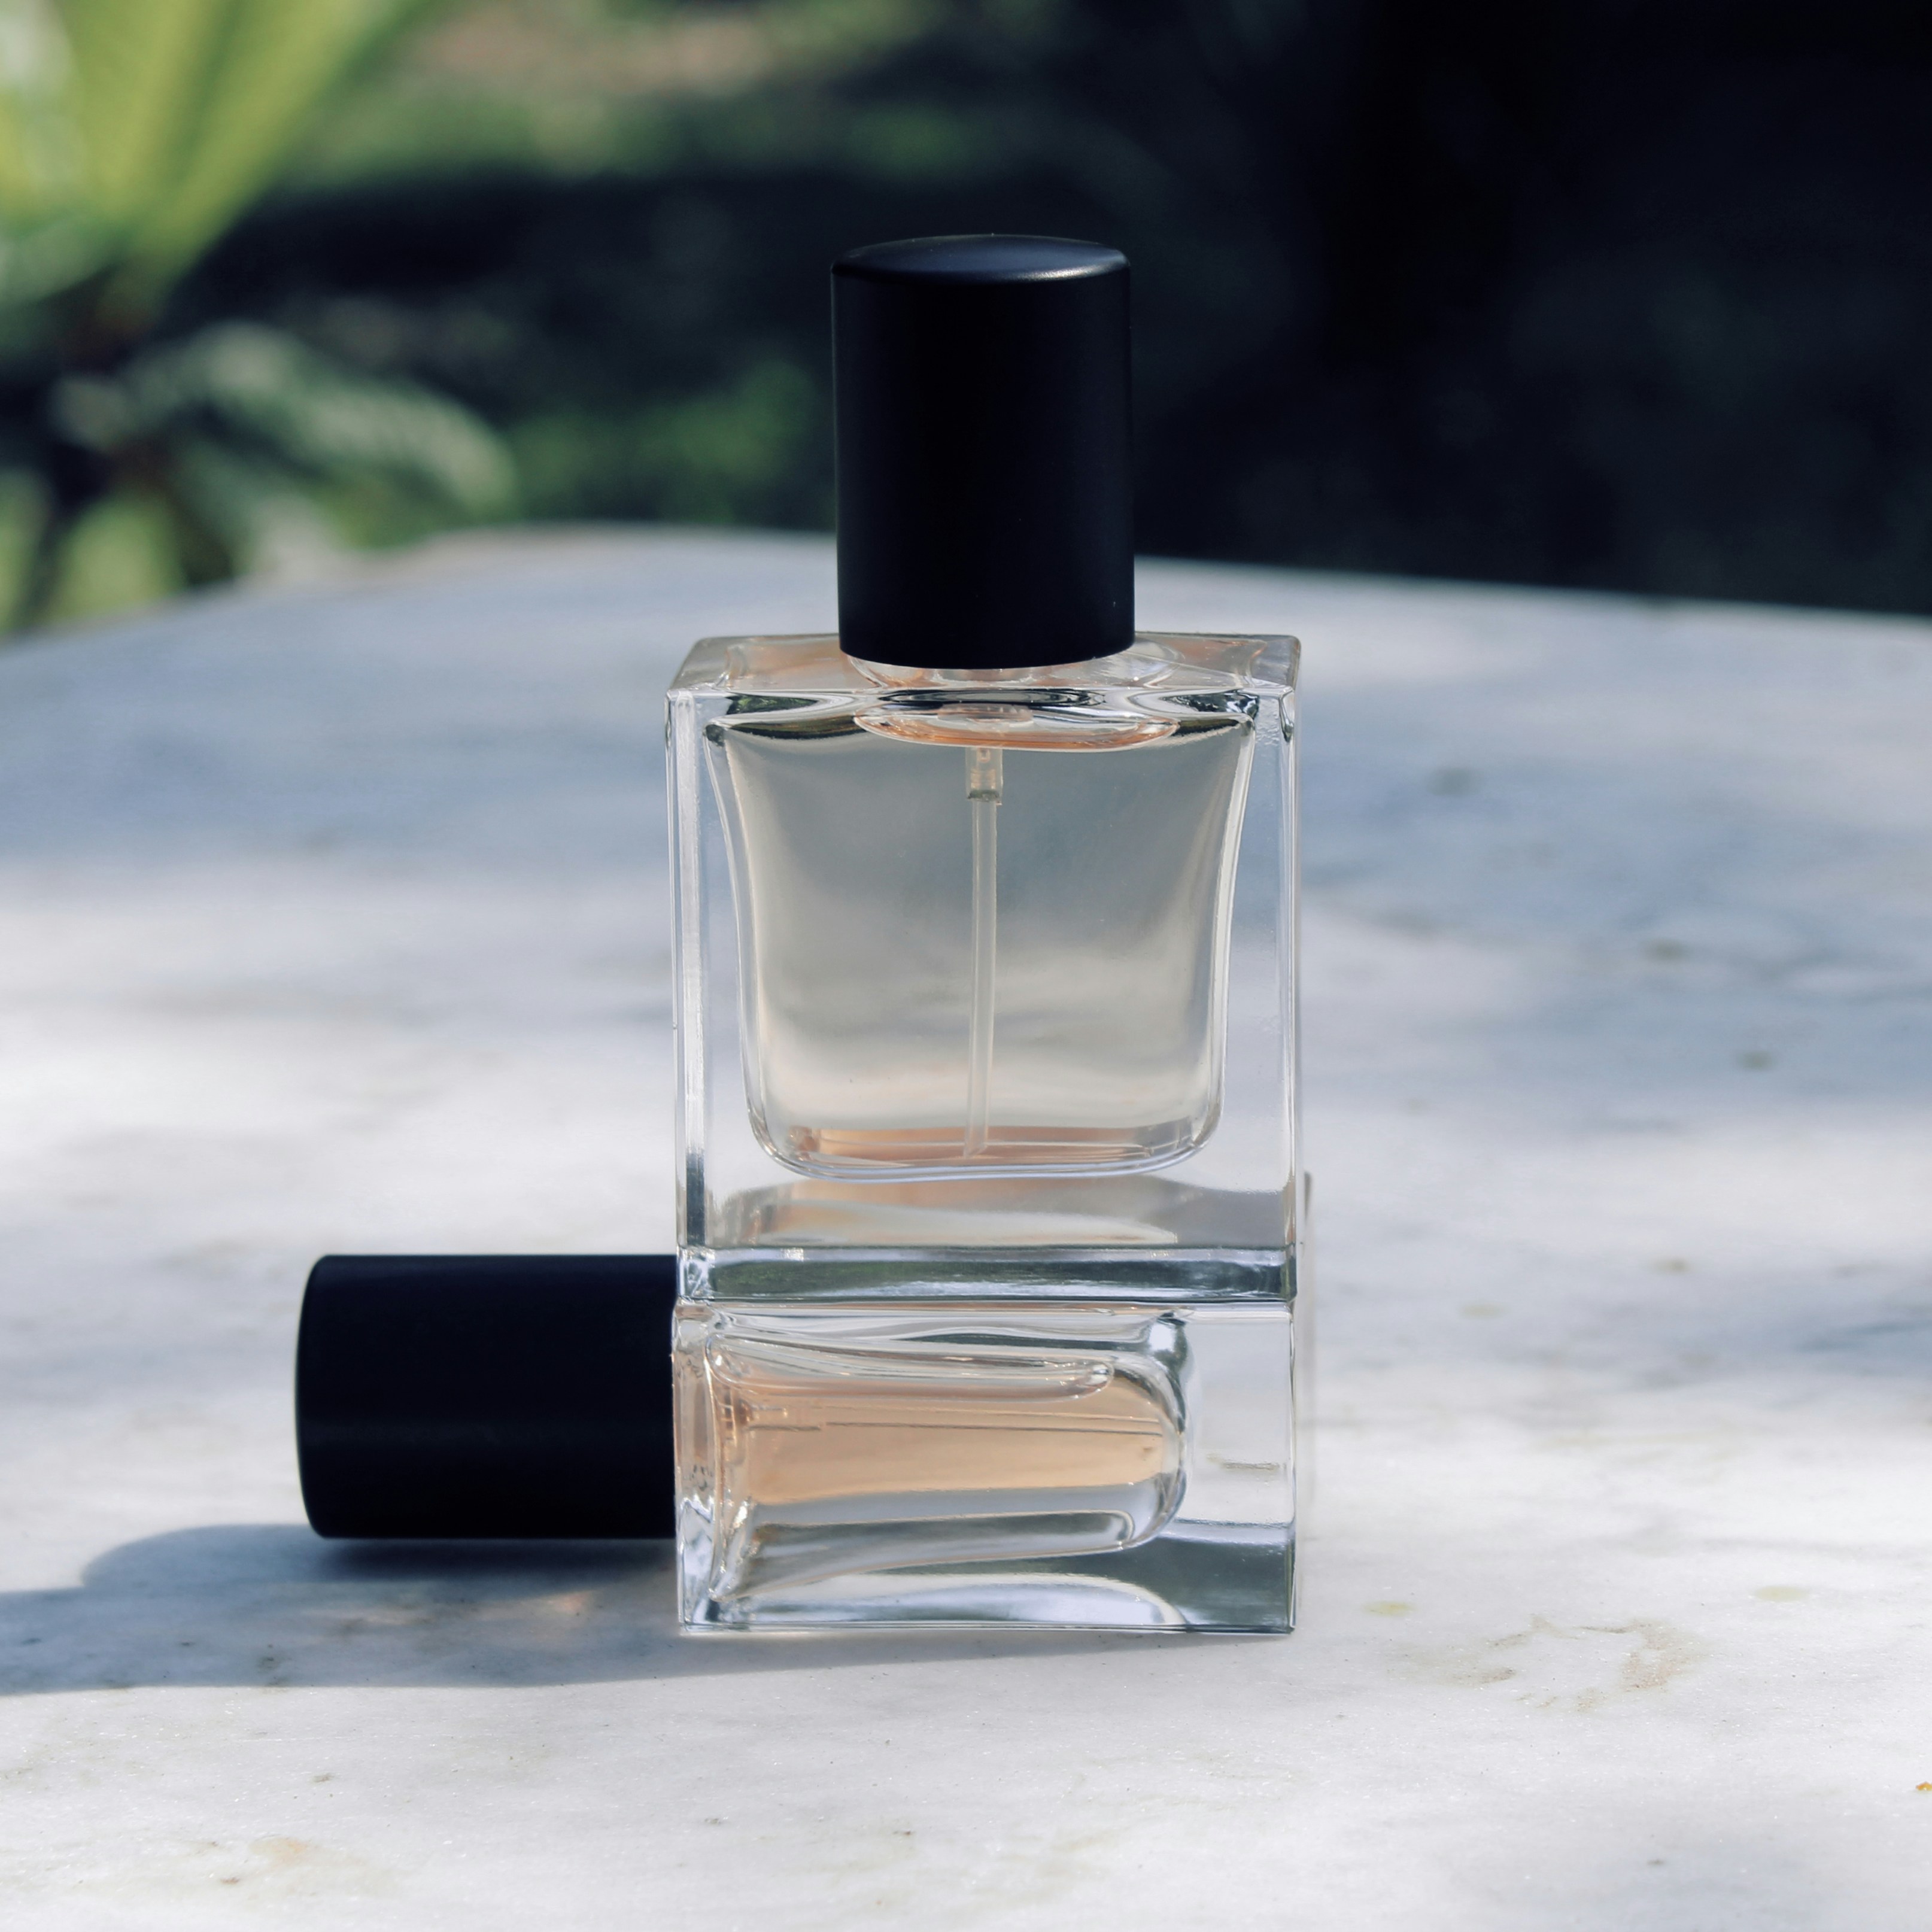 Zliz limited edition parfum